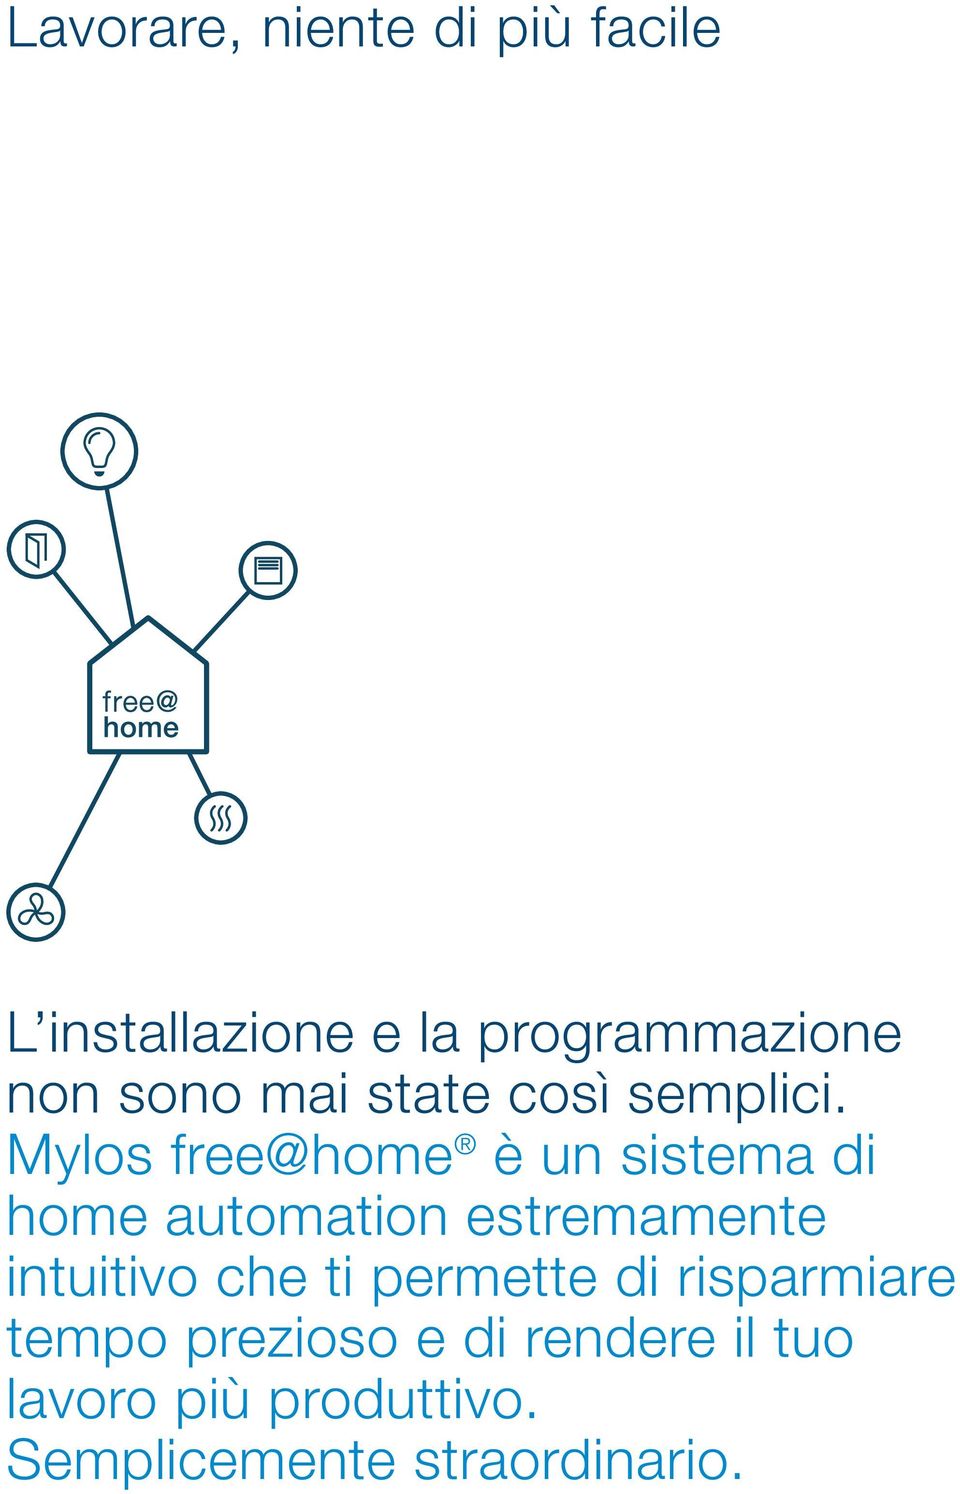 Mylos free@home è un sistema di home automation estremamente intuitivo